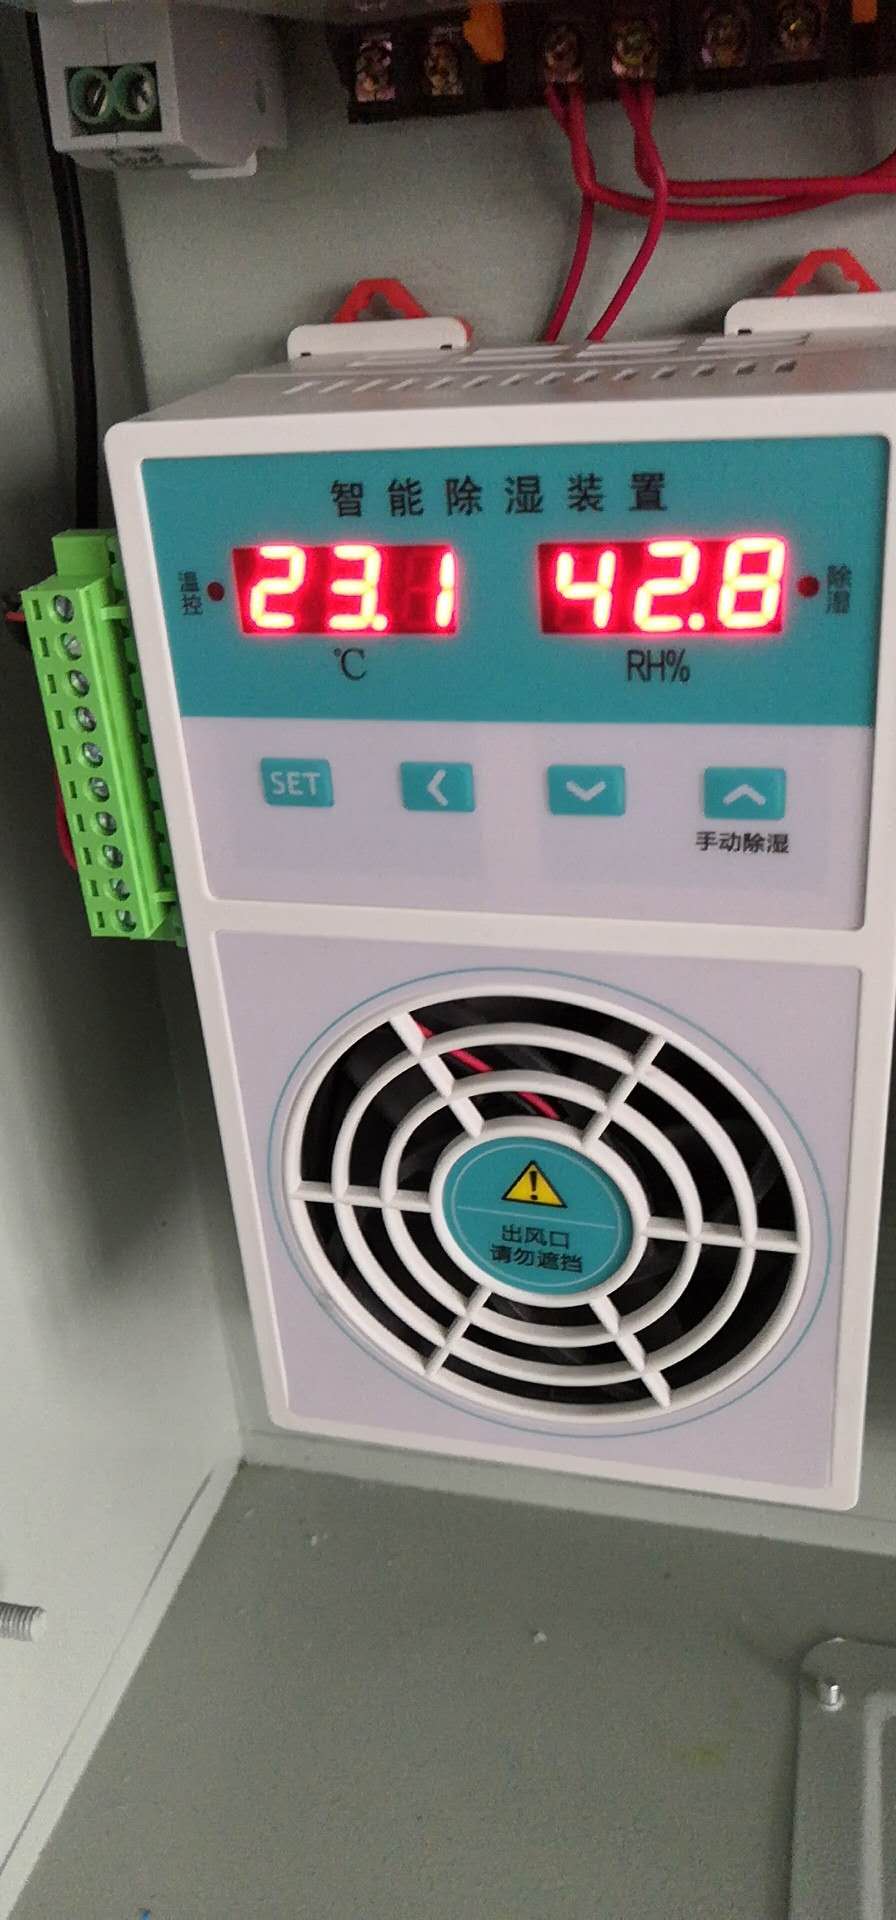 温湿度控制器XMTA-2C-